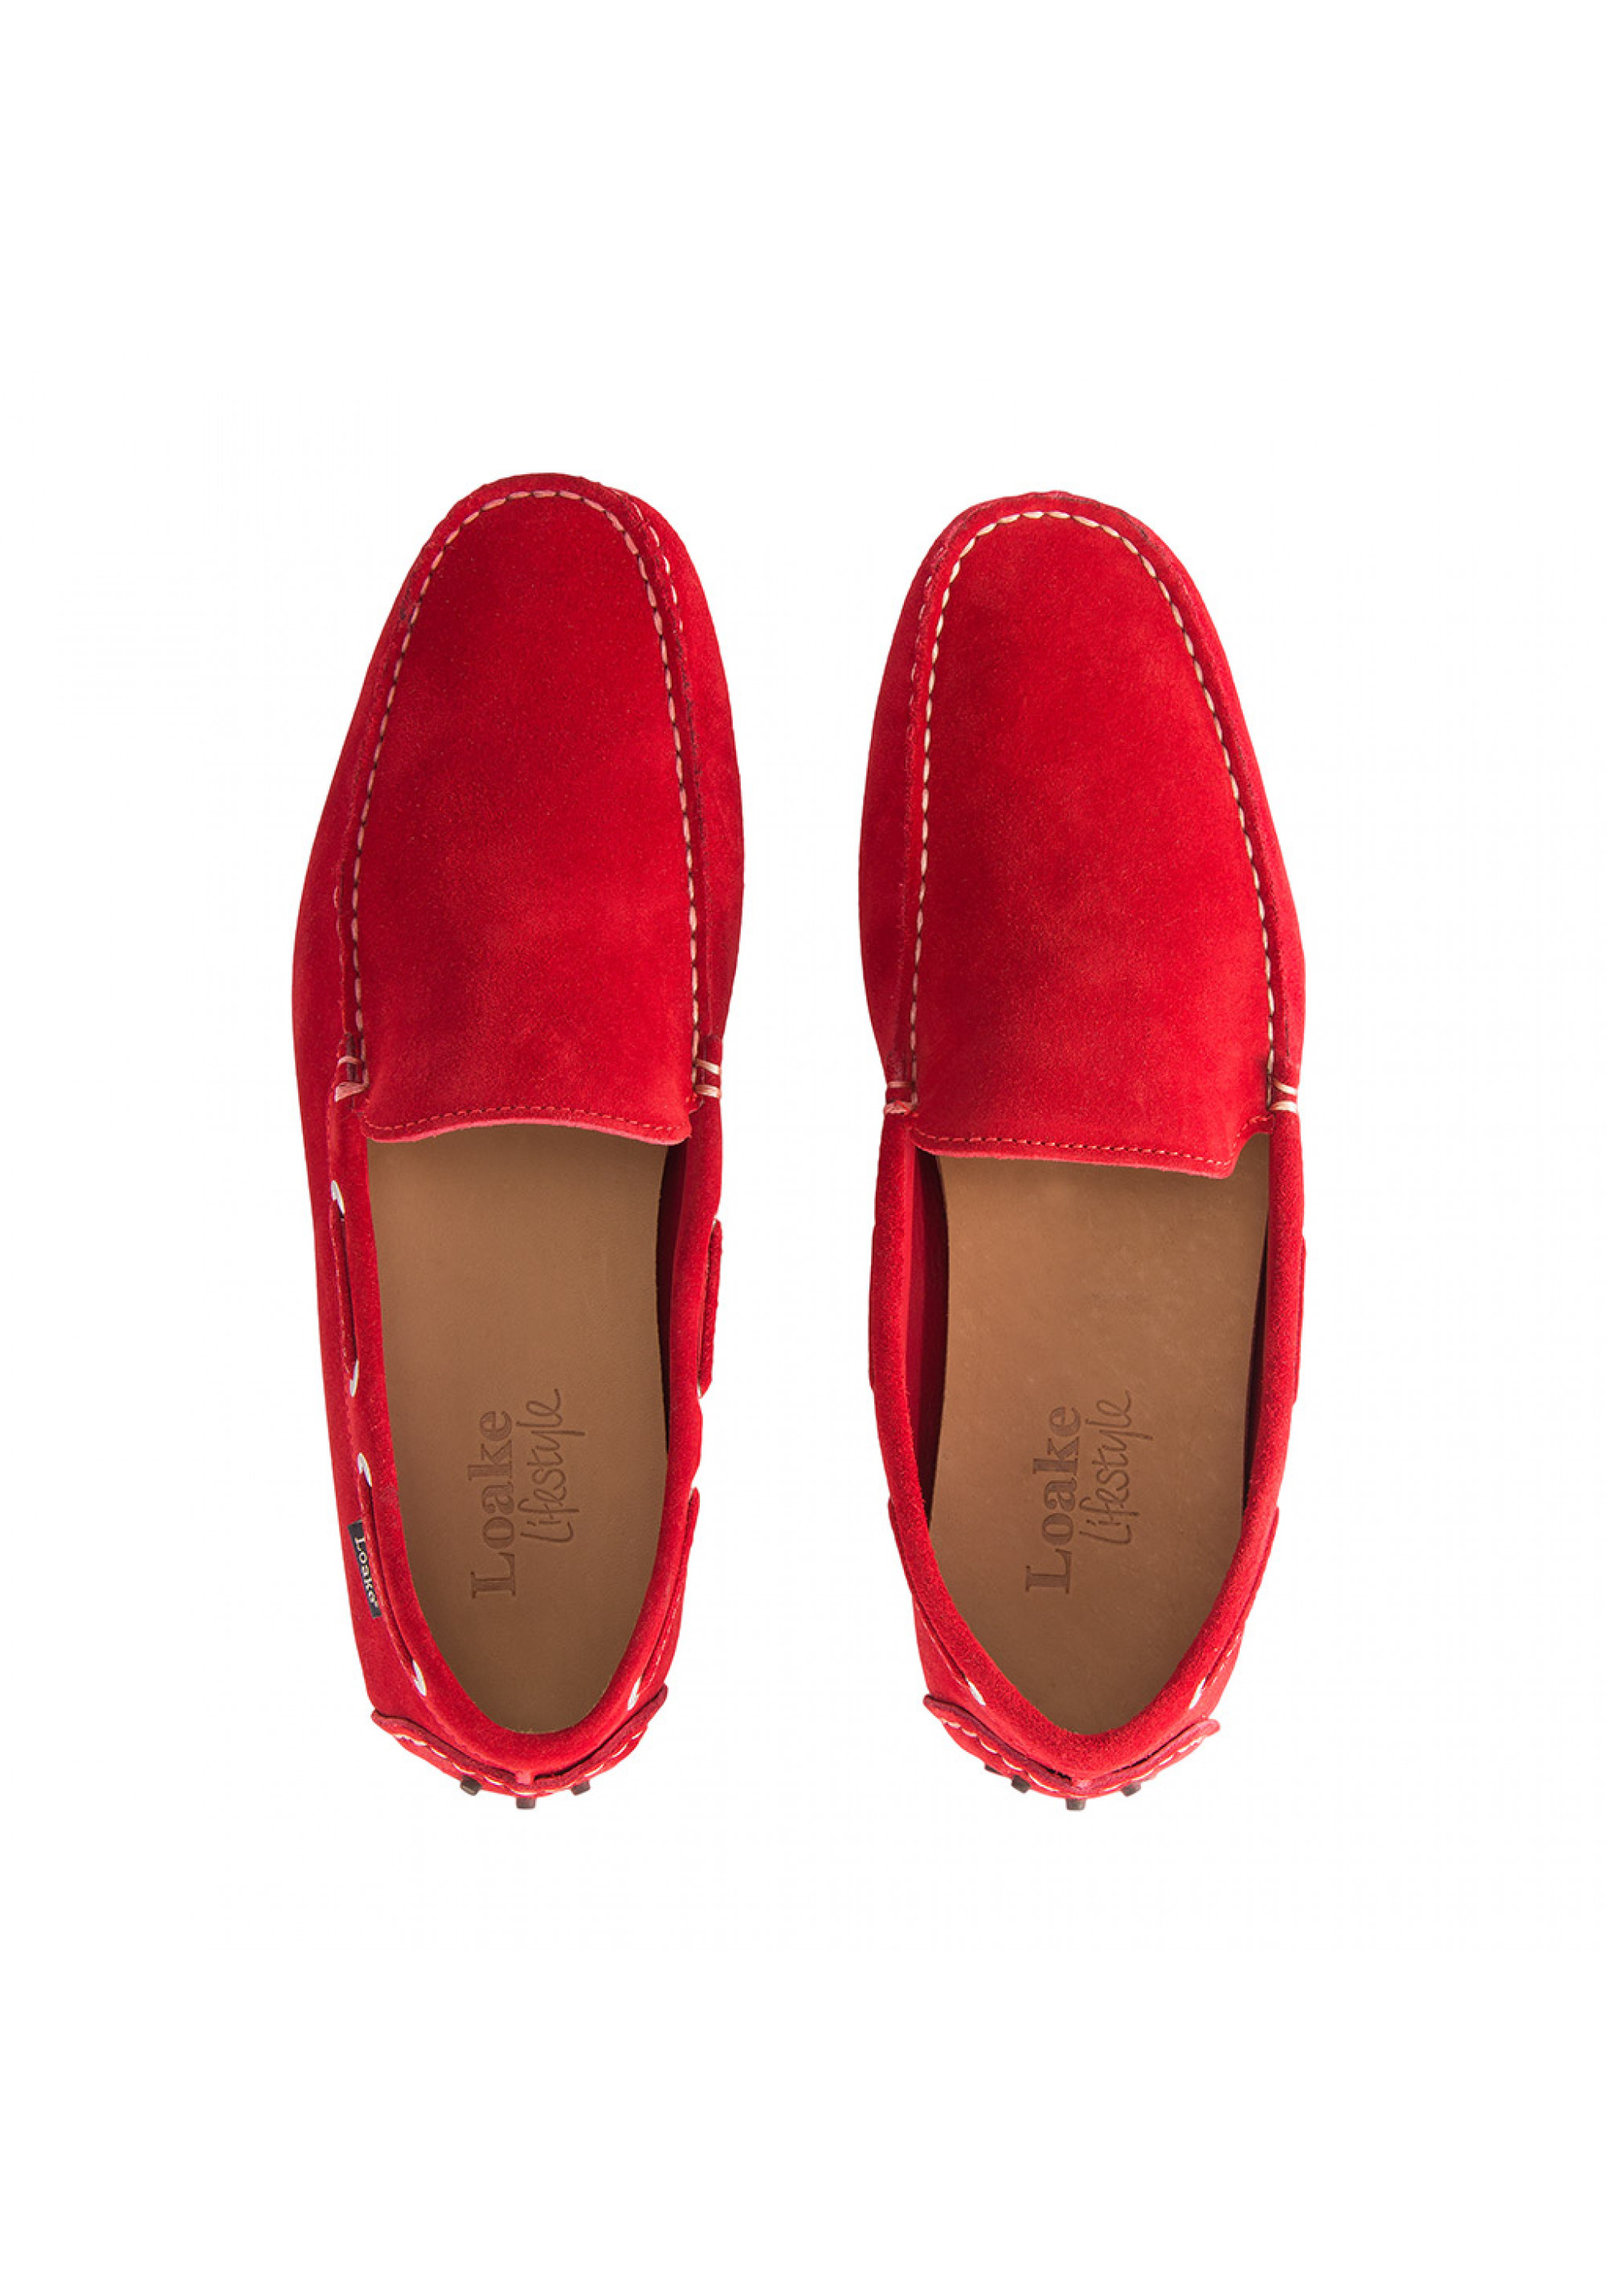 Pantofi Donington Red Suede